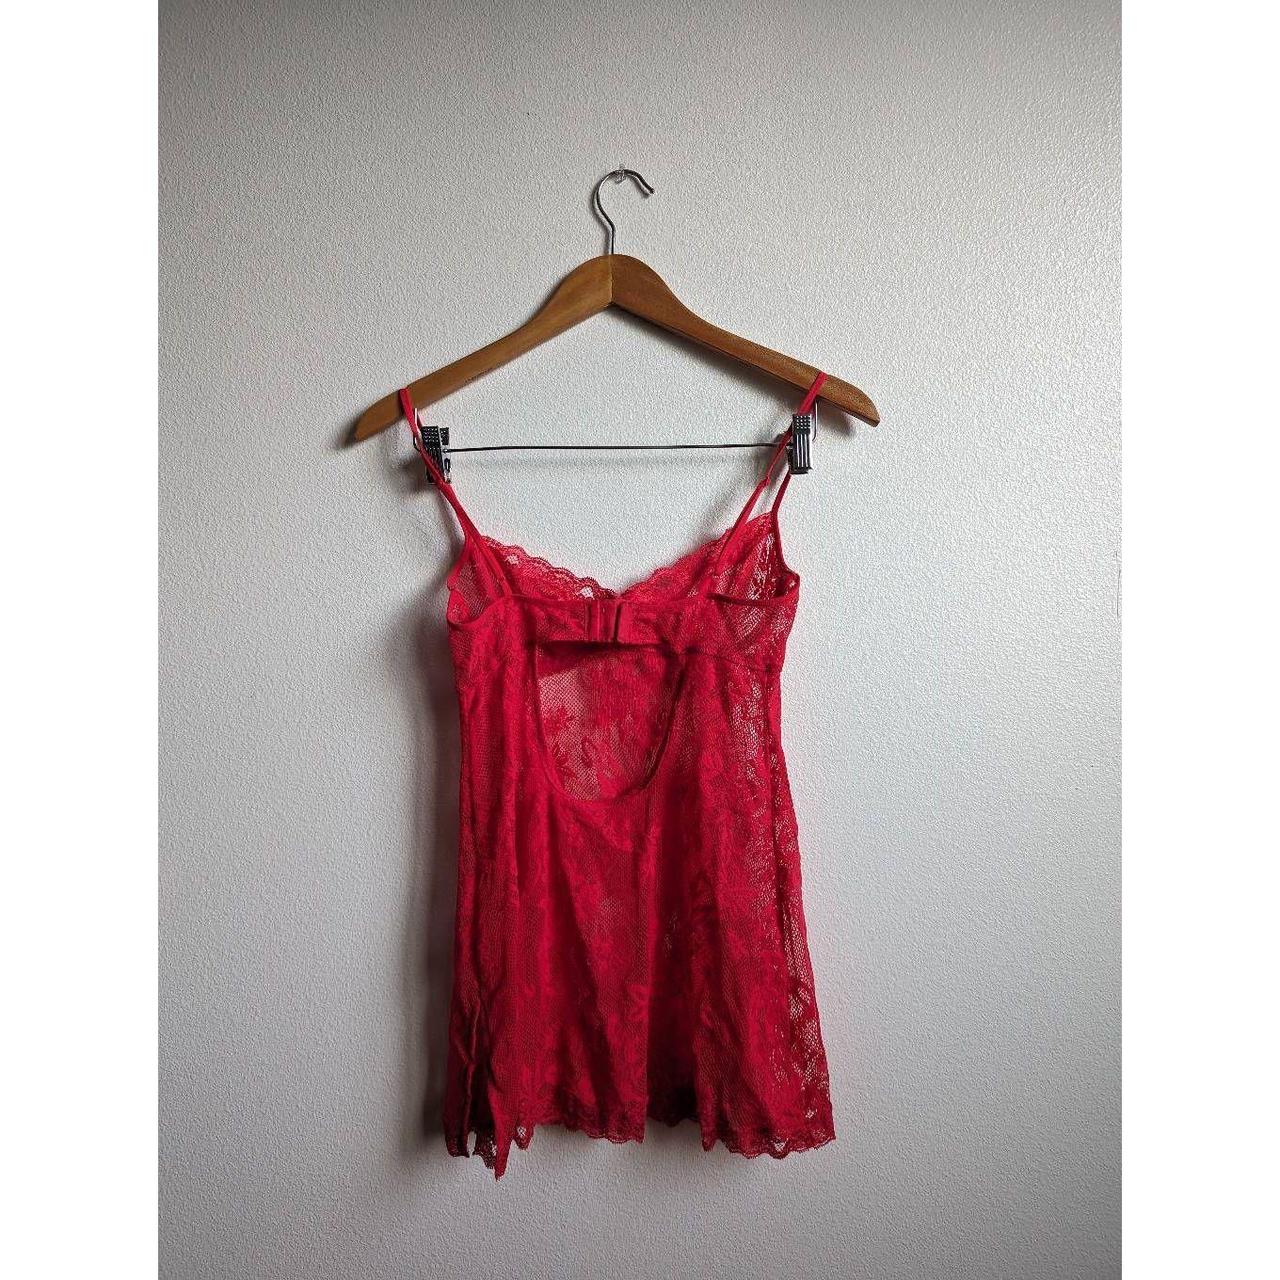 Red Victoria's Secret lace flowy lingerie top. Tbh - Depop